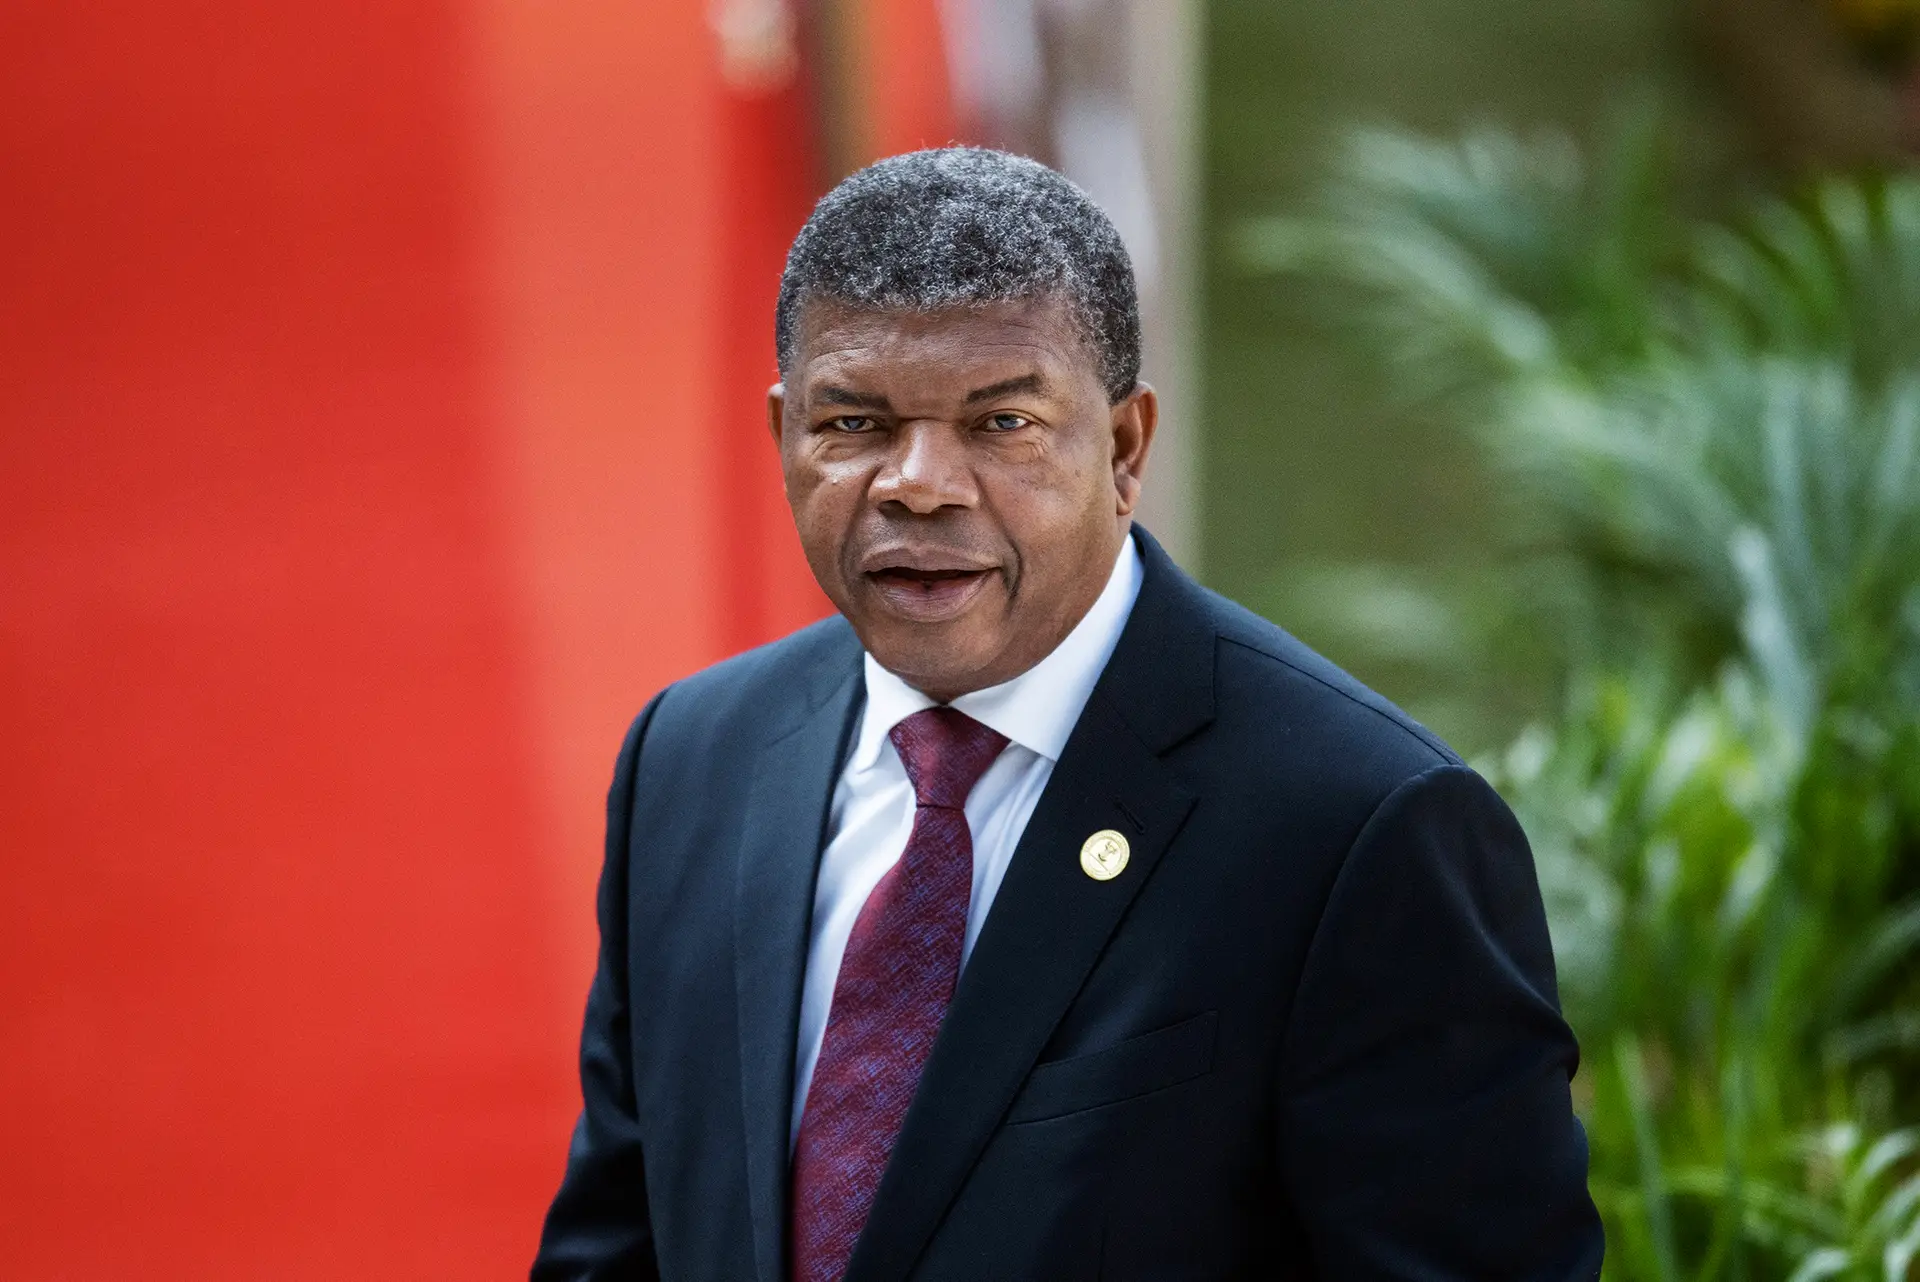 João Lourenço, Presidente angolano